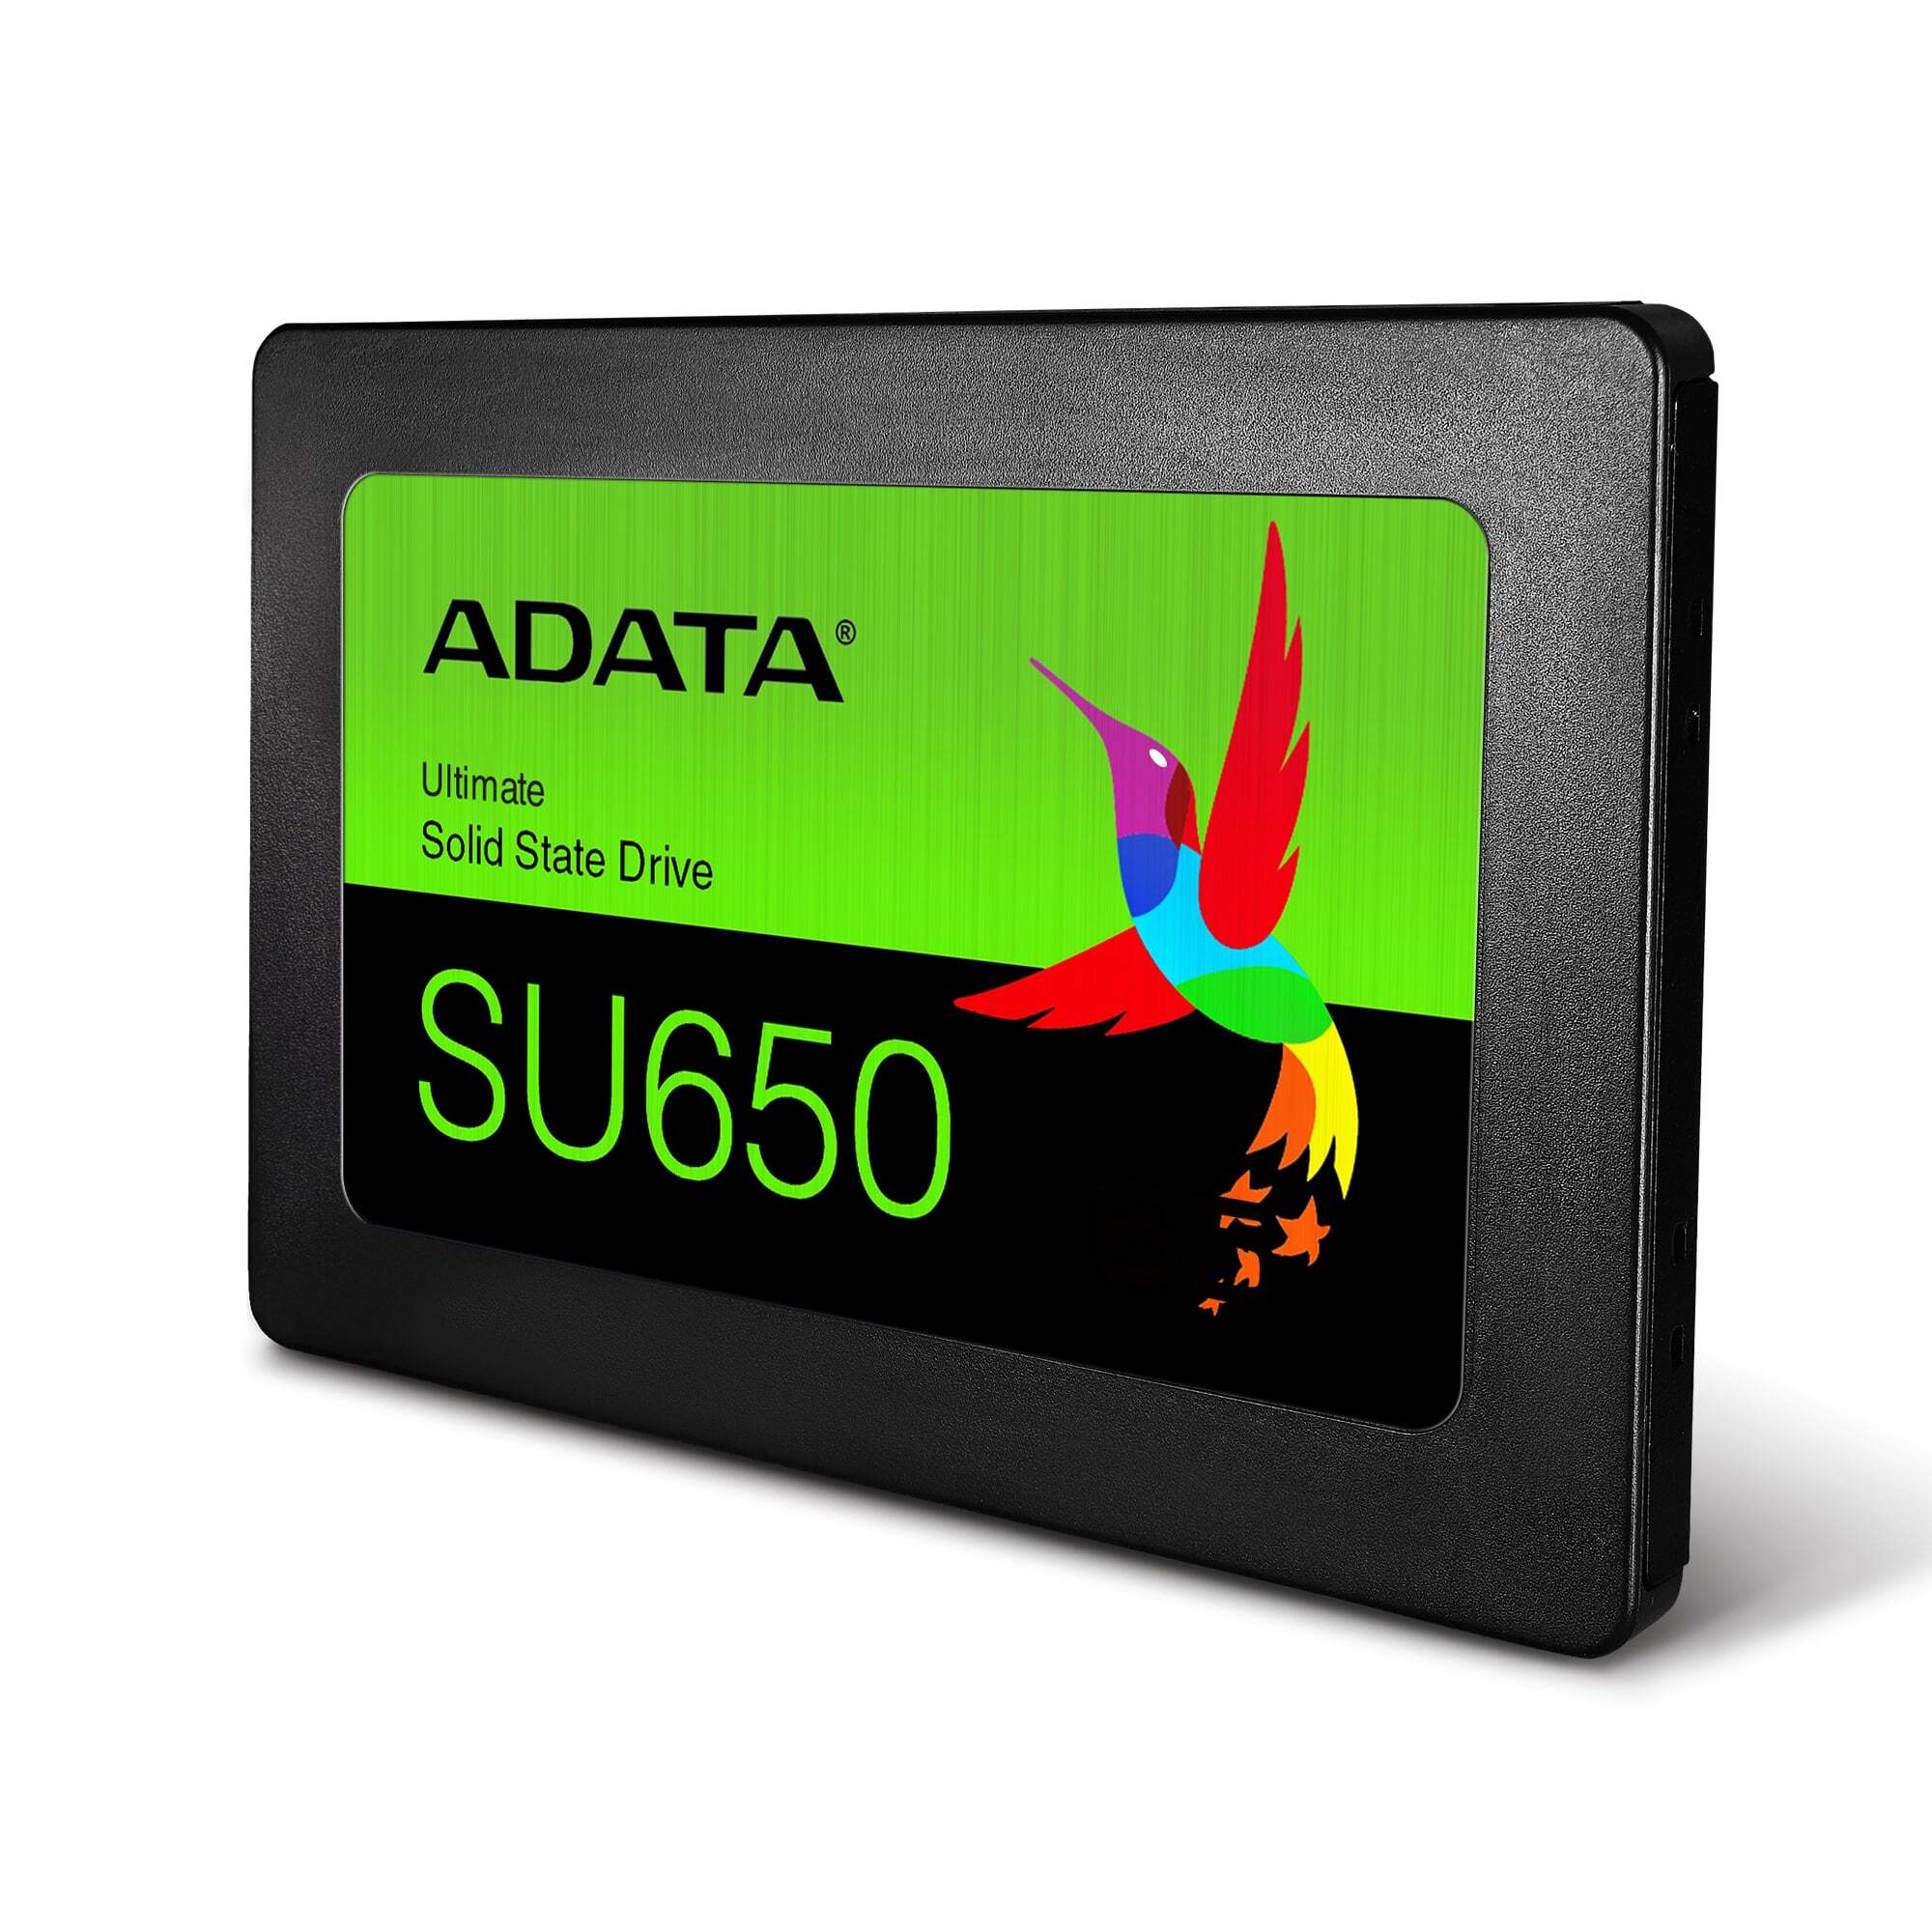 A data Ultimate su650 120gb. Твердотельный накопитель ADATA Ultimate su650 120gb. ADATA Ultimate su650 240 ГБ SATA asu650ss-240gt-r. 240 ГБ 2.5" SATA накопитель ADATA su650.